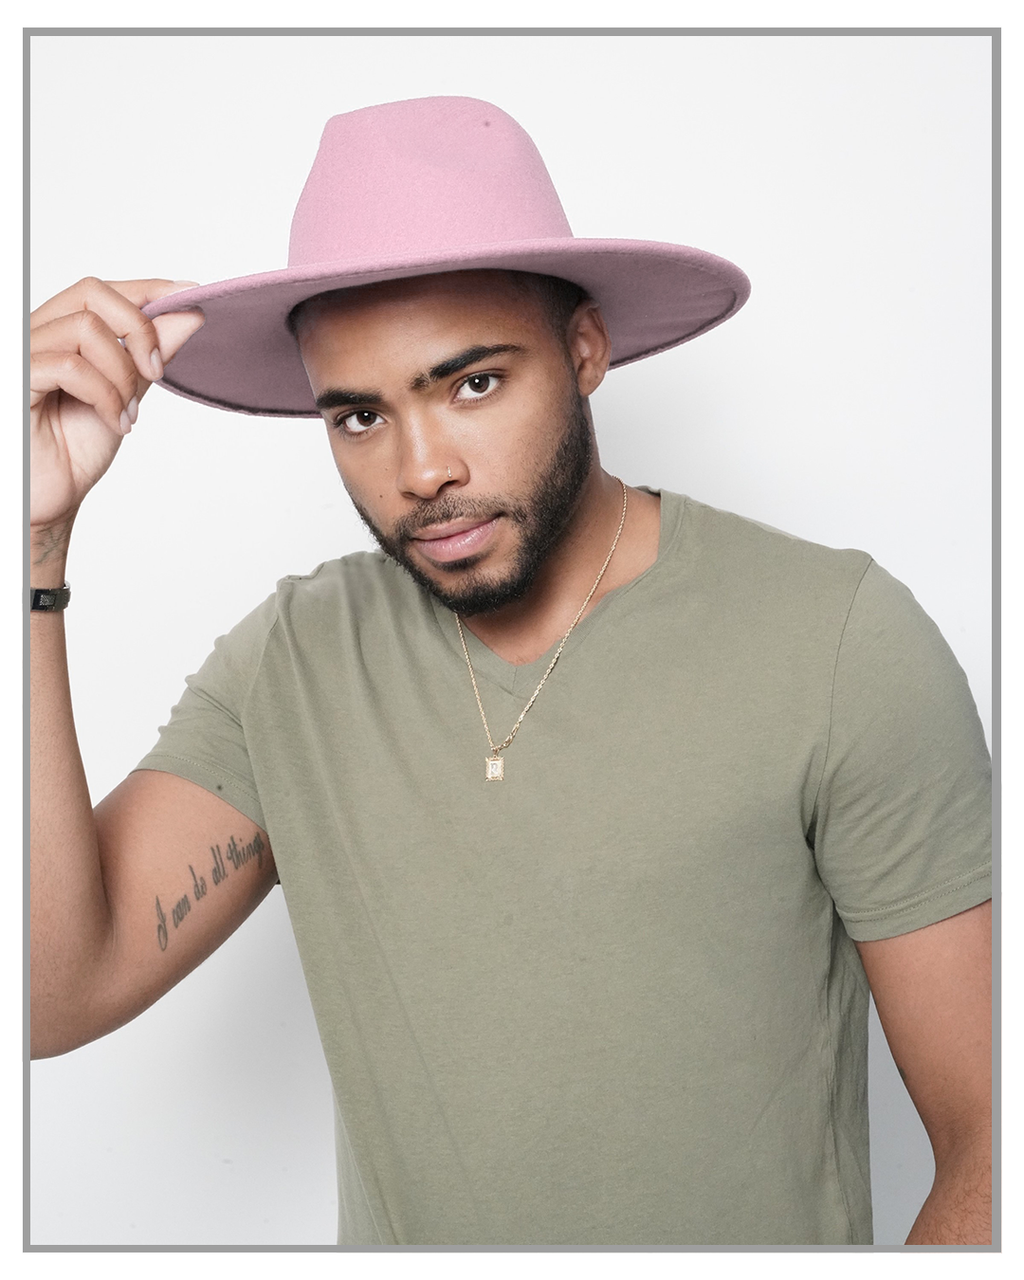 Pink Wide Brim Fedora Hat